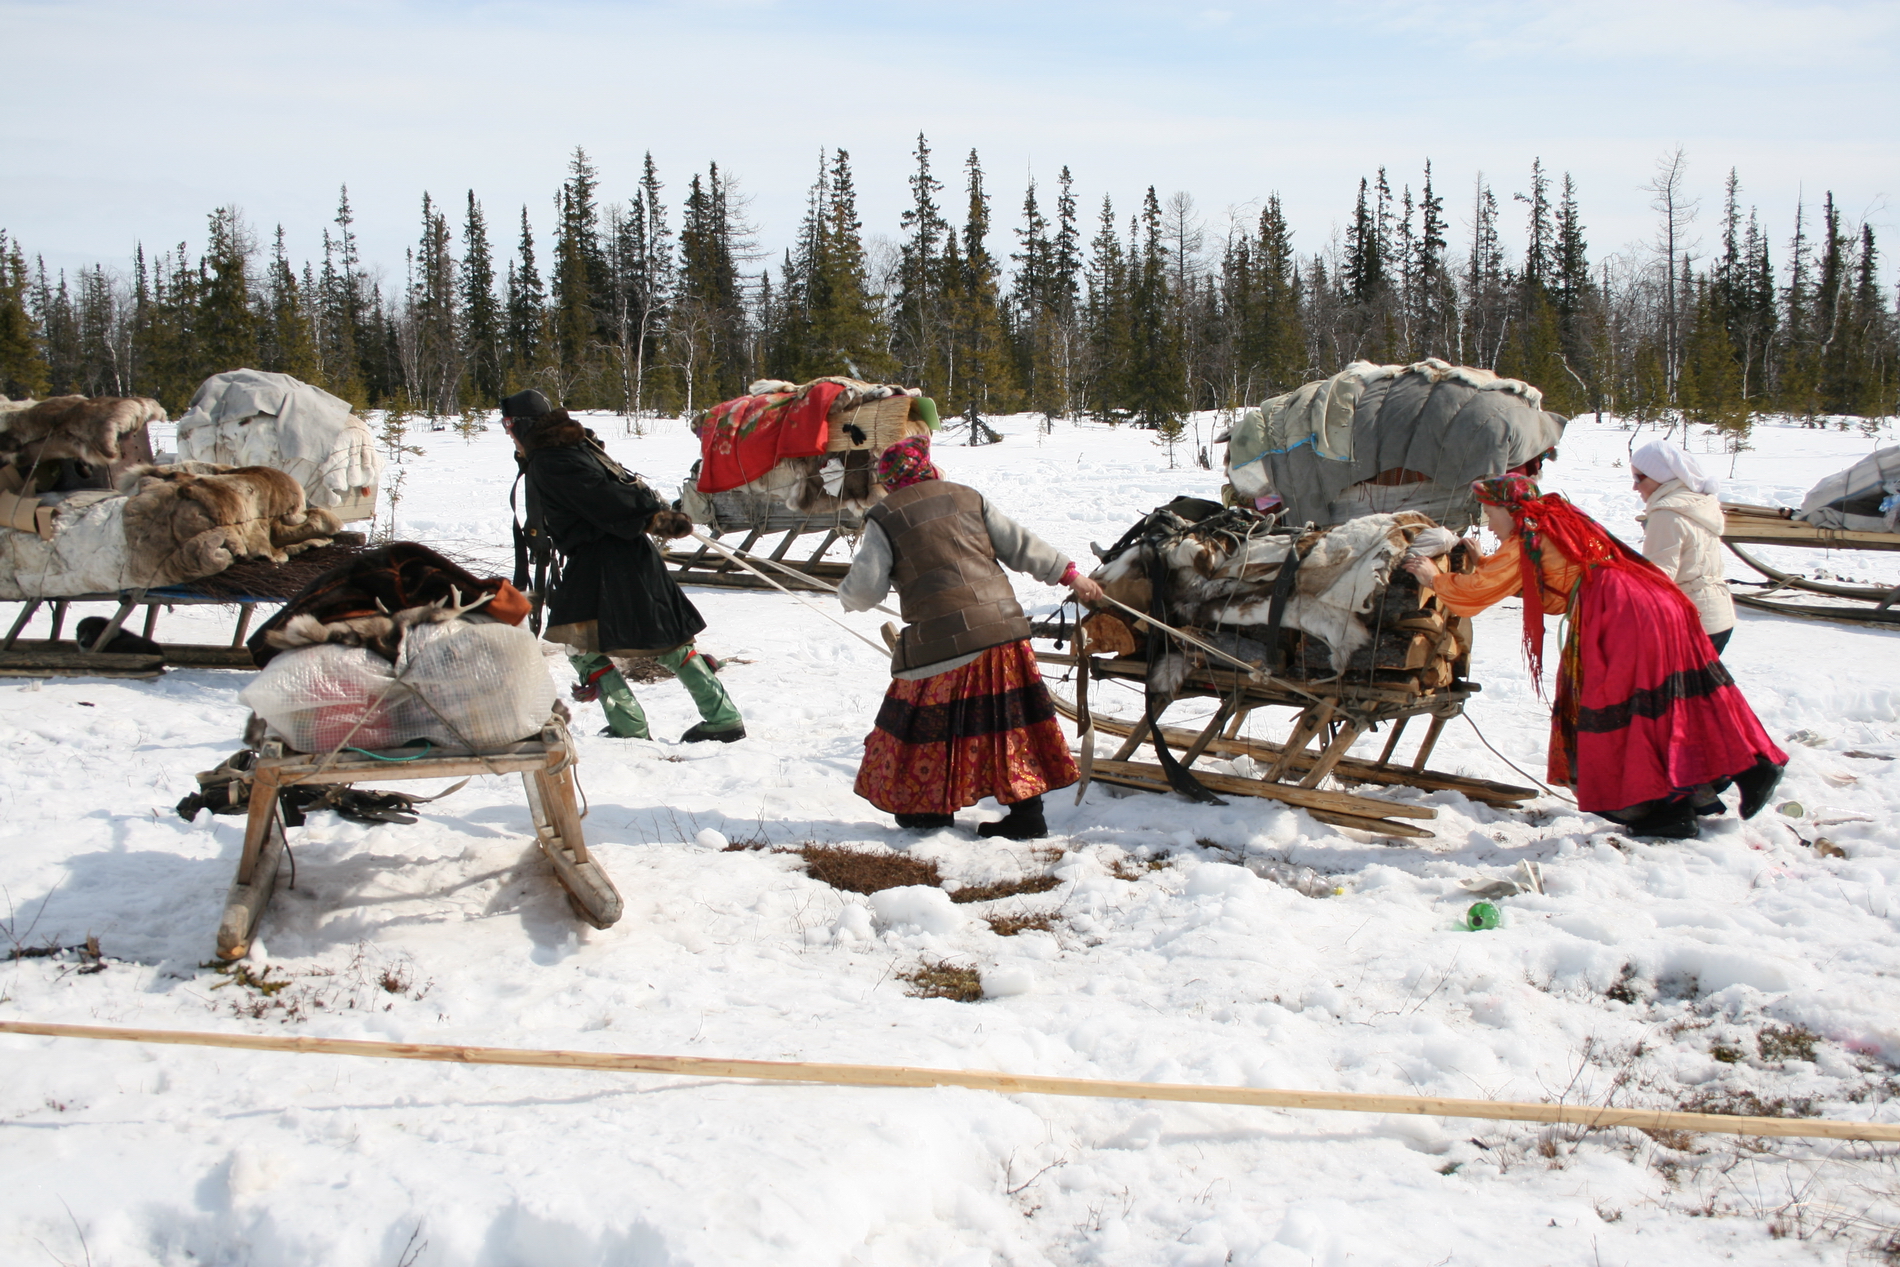  Стандарт ответственности перед коренными народами подписали 18 компаний в Арктике